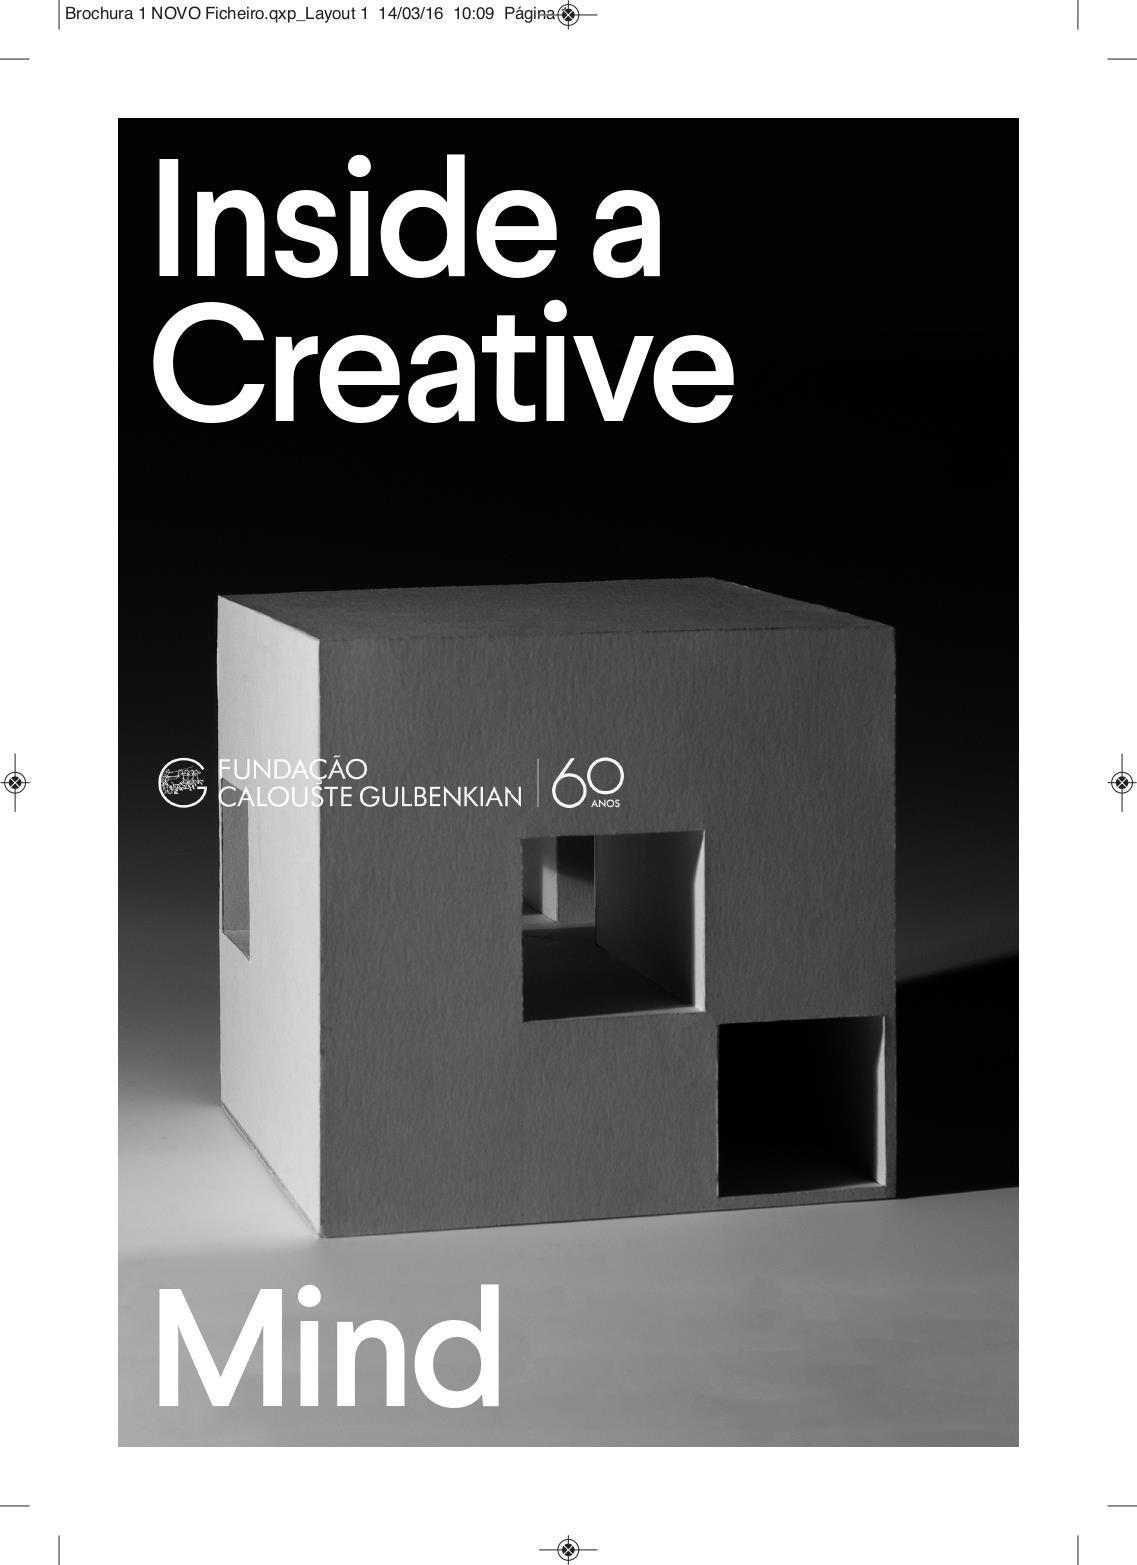 Inside a Creative Mind. Arquitectura Portuguesa